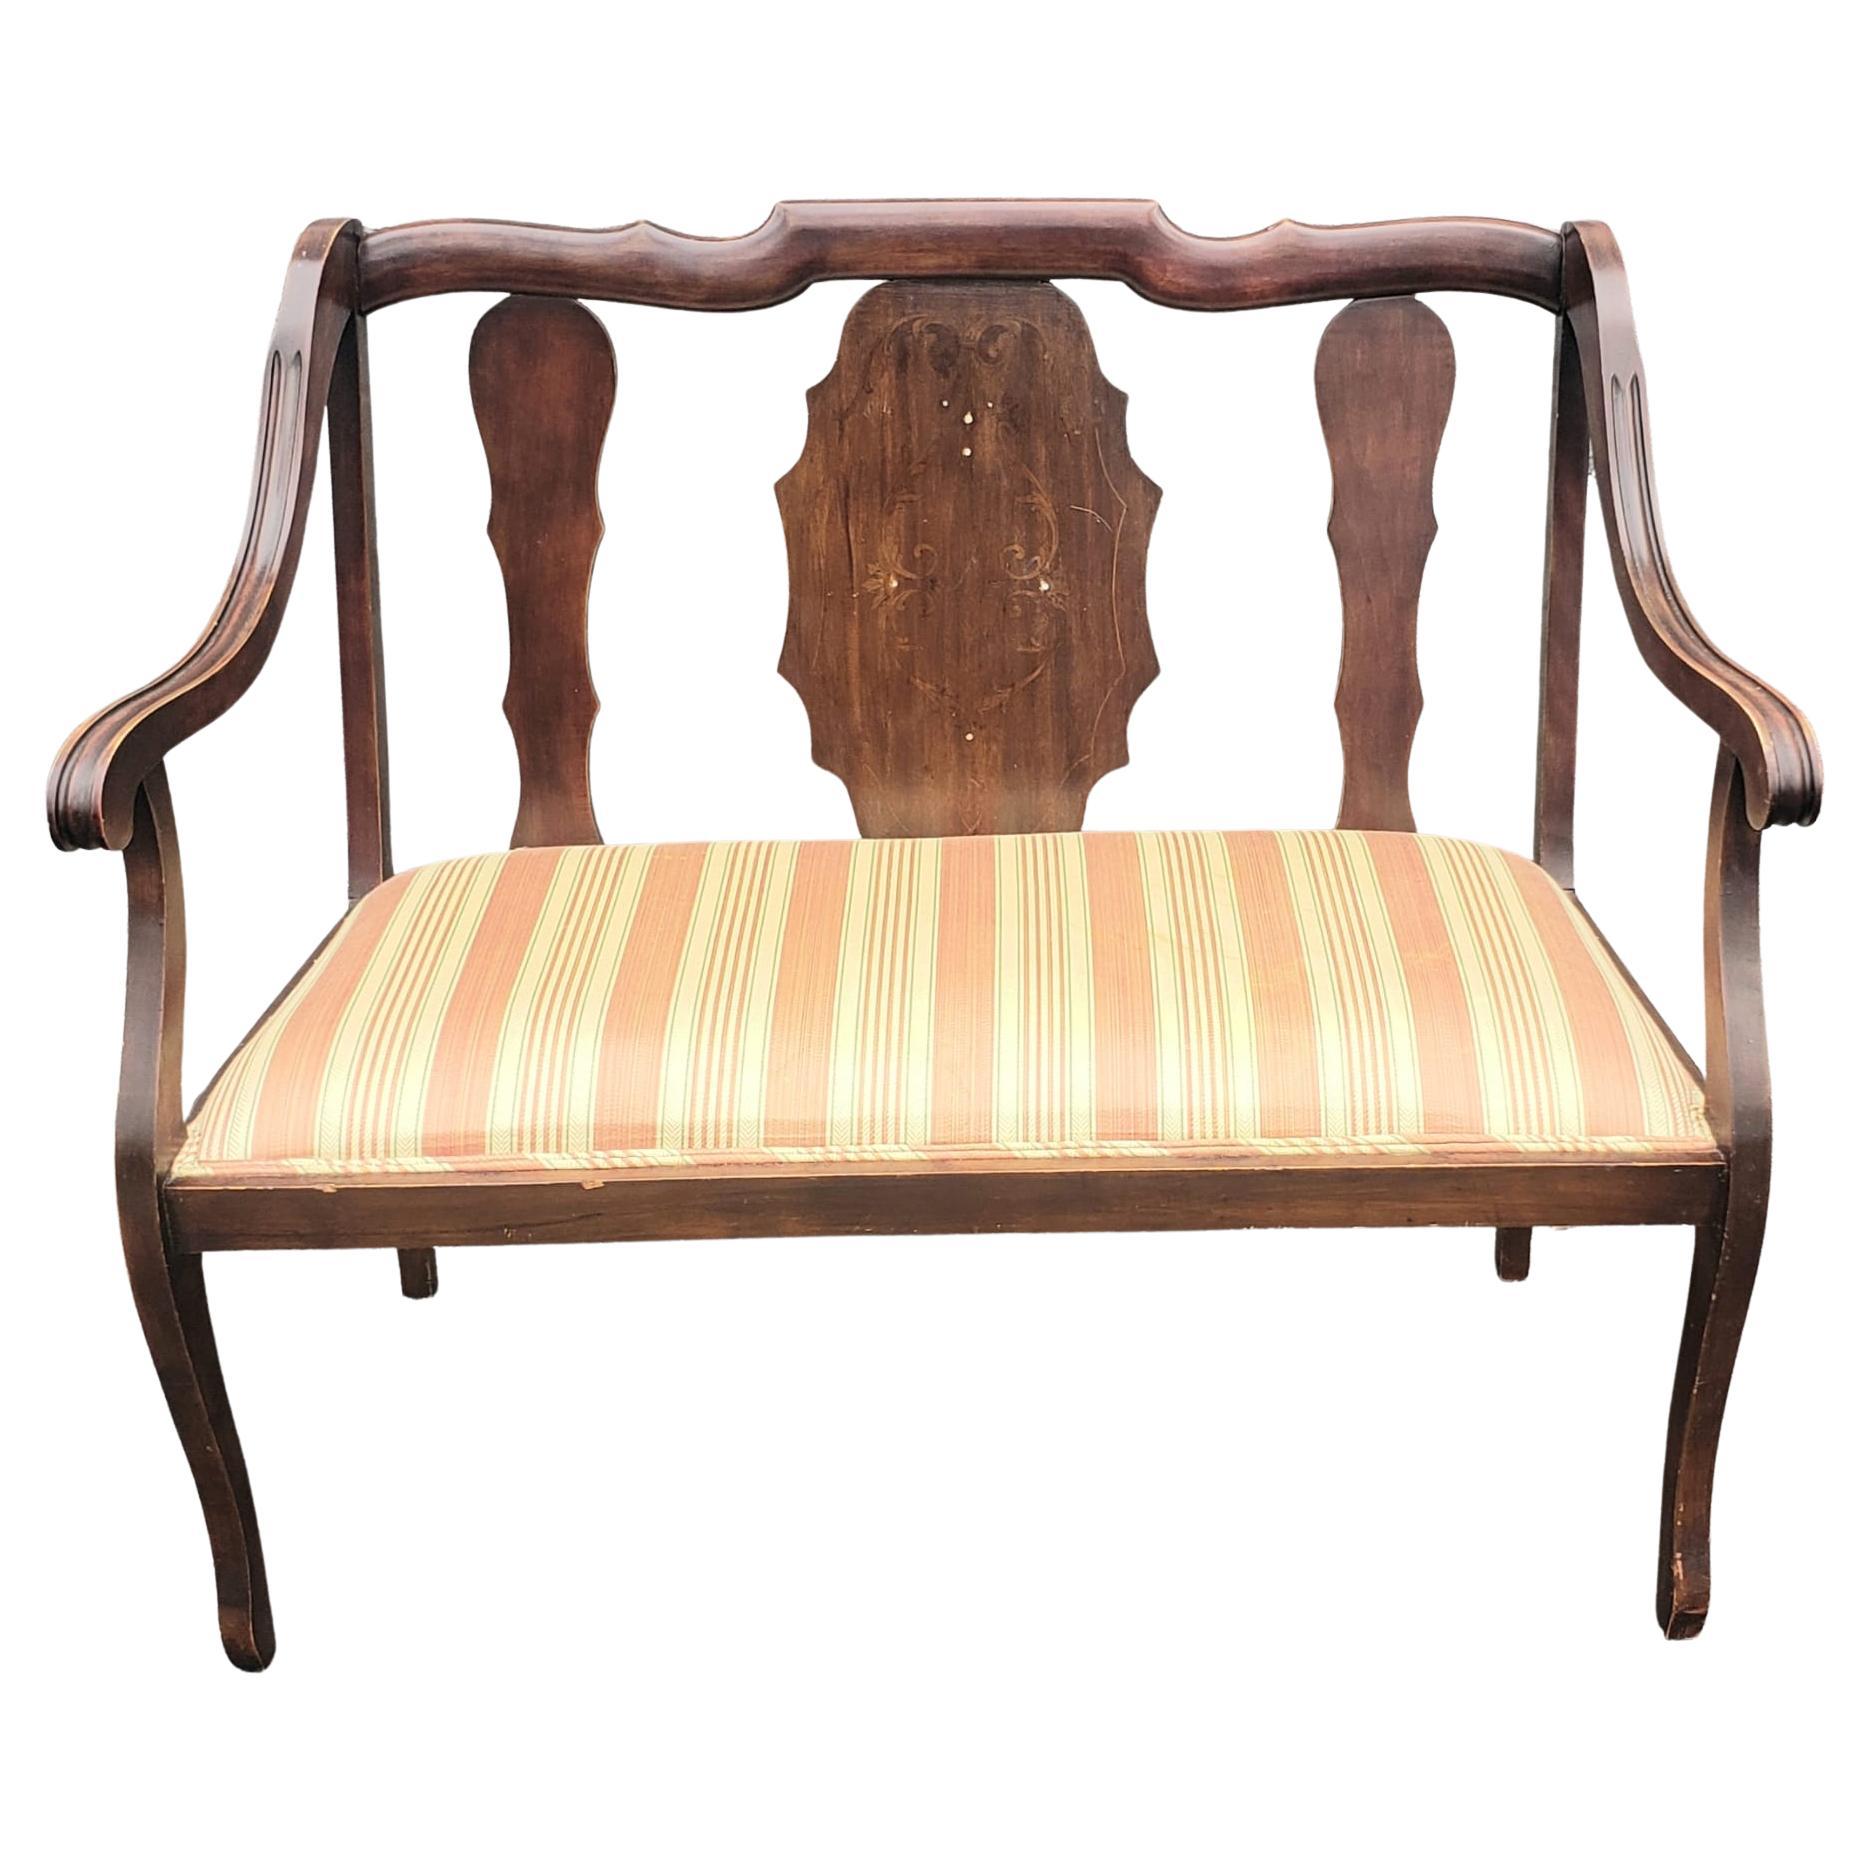 George III Stil Nussbaum mit Intarsien und gepolstertem Sitz Sofa in gutem Vintage-Zustand.
Misst 41,5